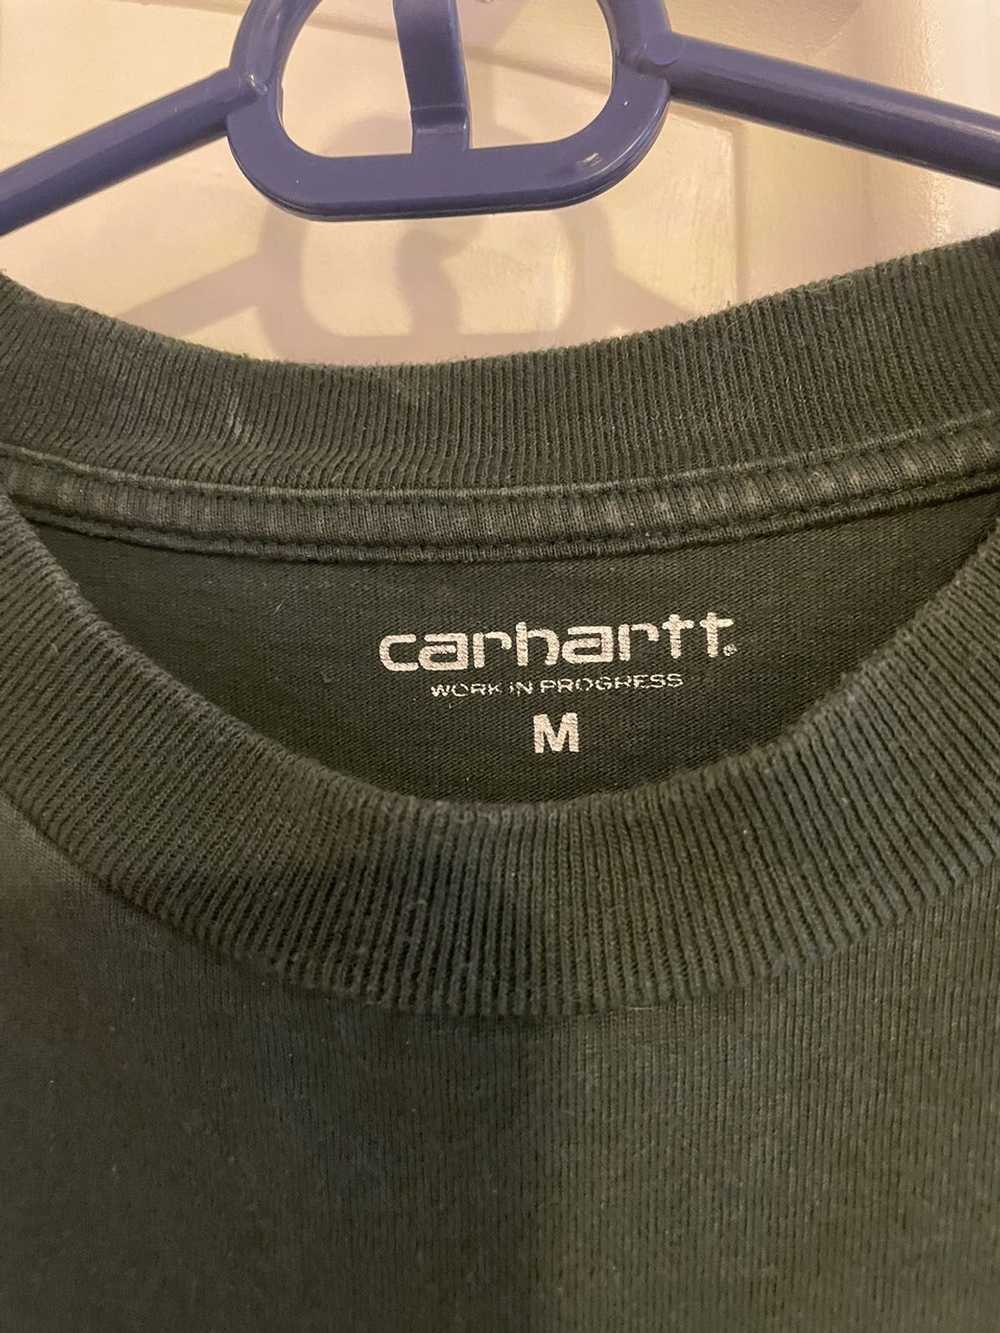 Carhartt Wip Carhartt WIP T Shirt - image 3